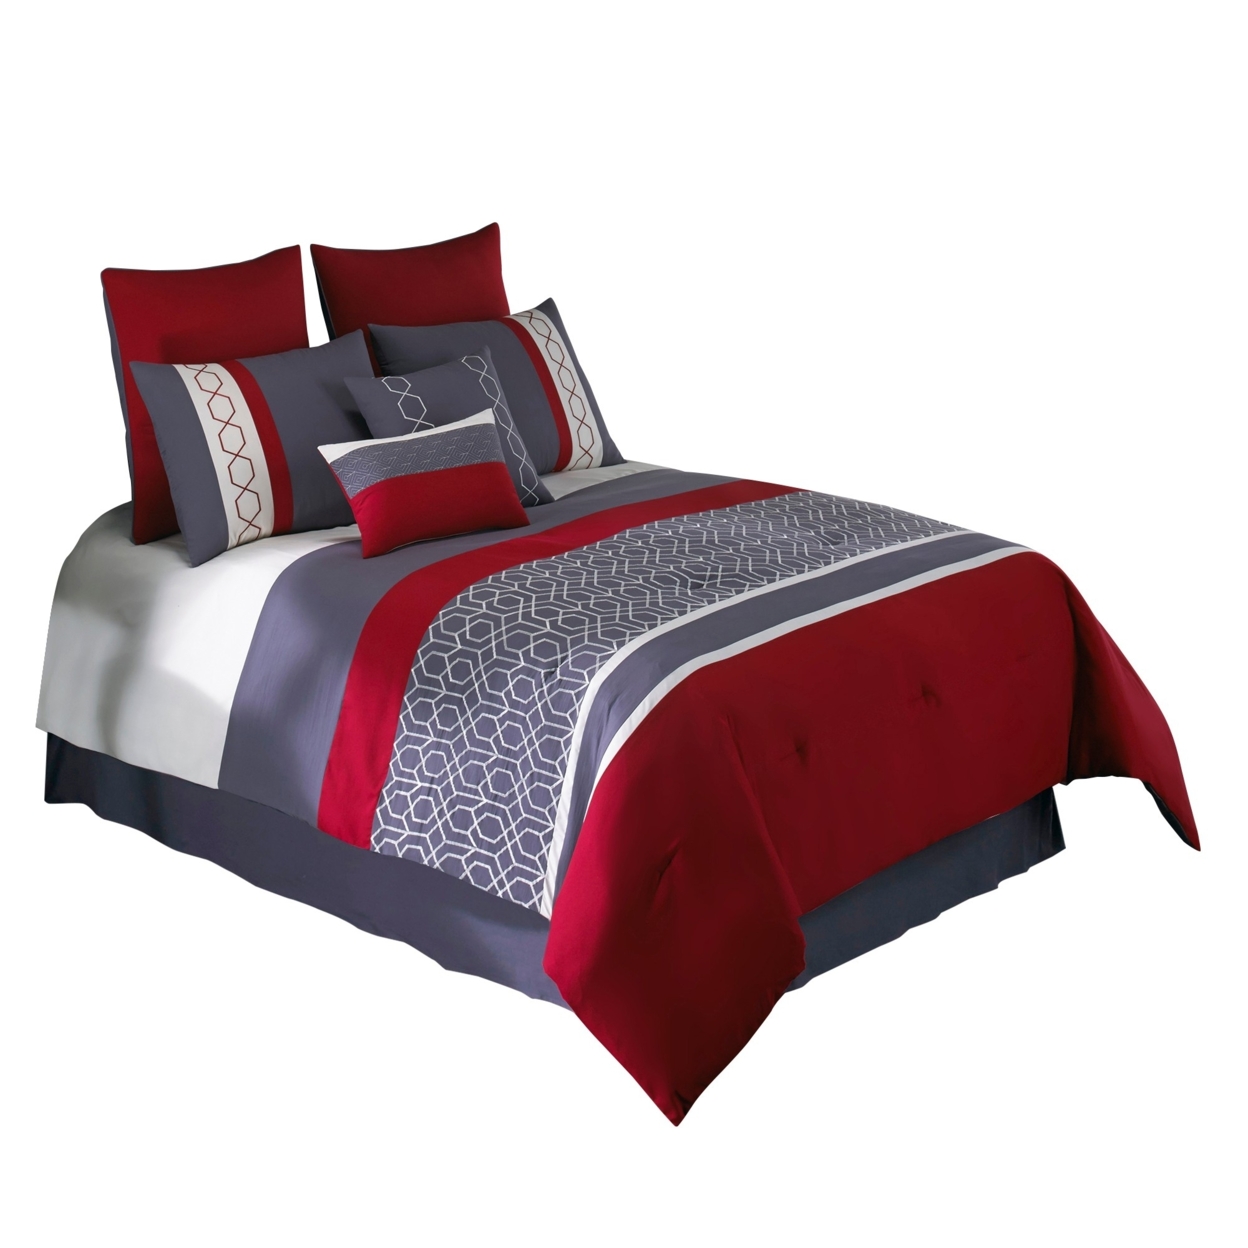 8 Piece King Comforter Set With Printed Trellis Pattern, Red- Saltoro Sherpi